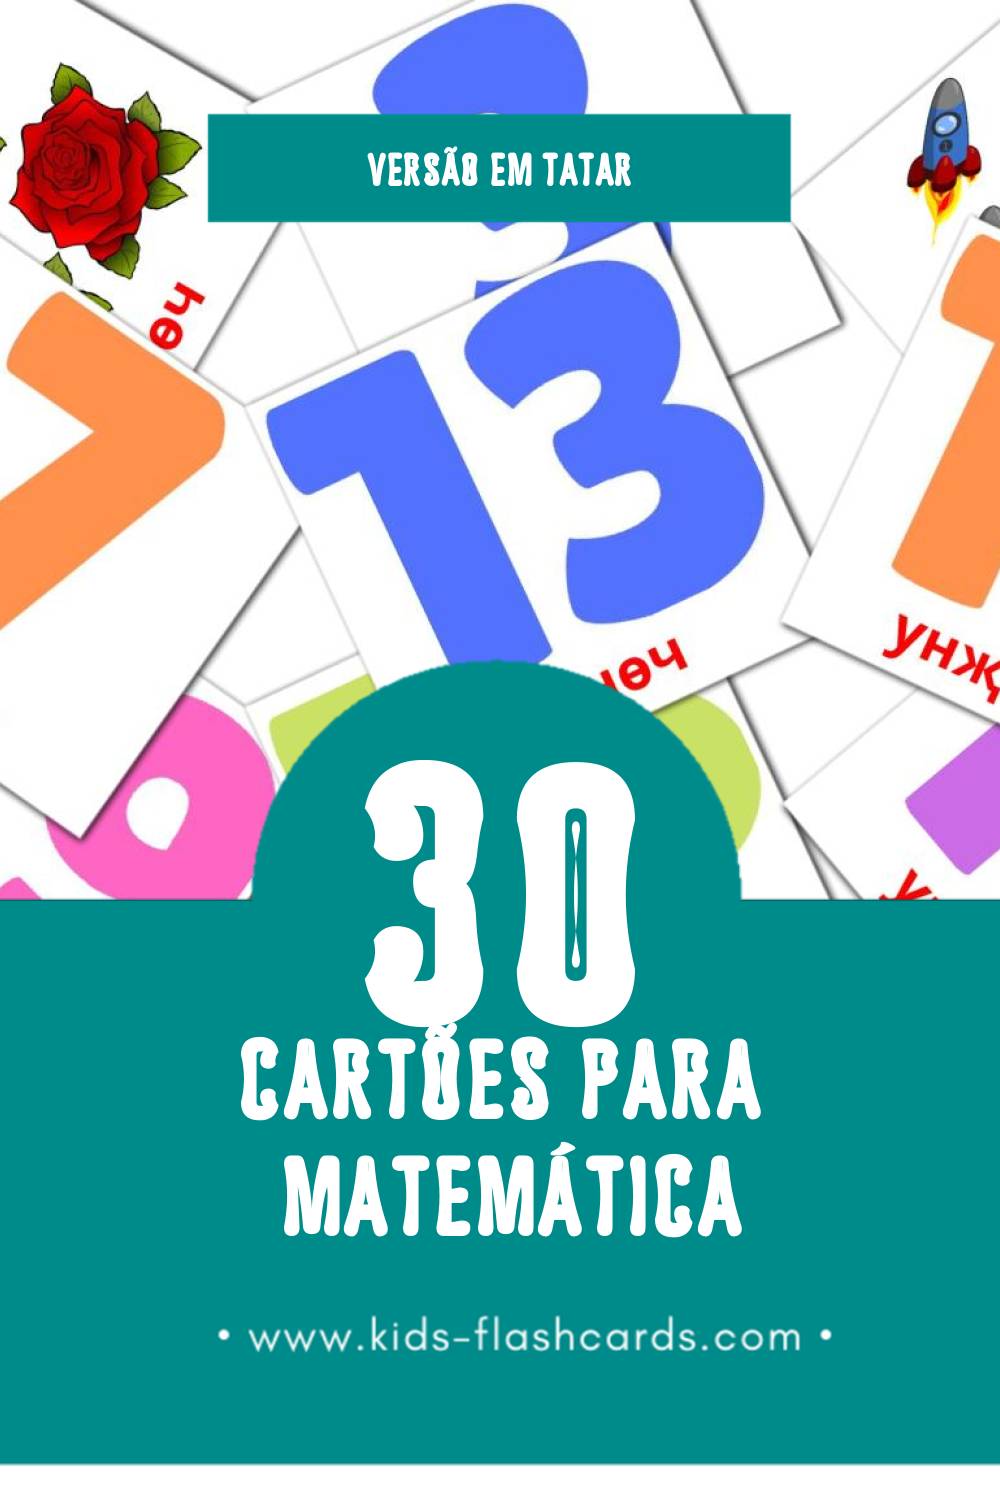 Flashcards de Математика Visuais para Toddlers (30 cartões em Tatar)